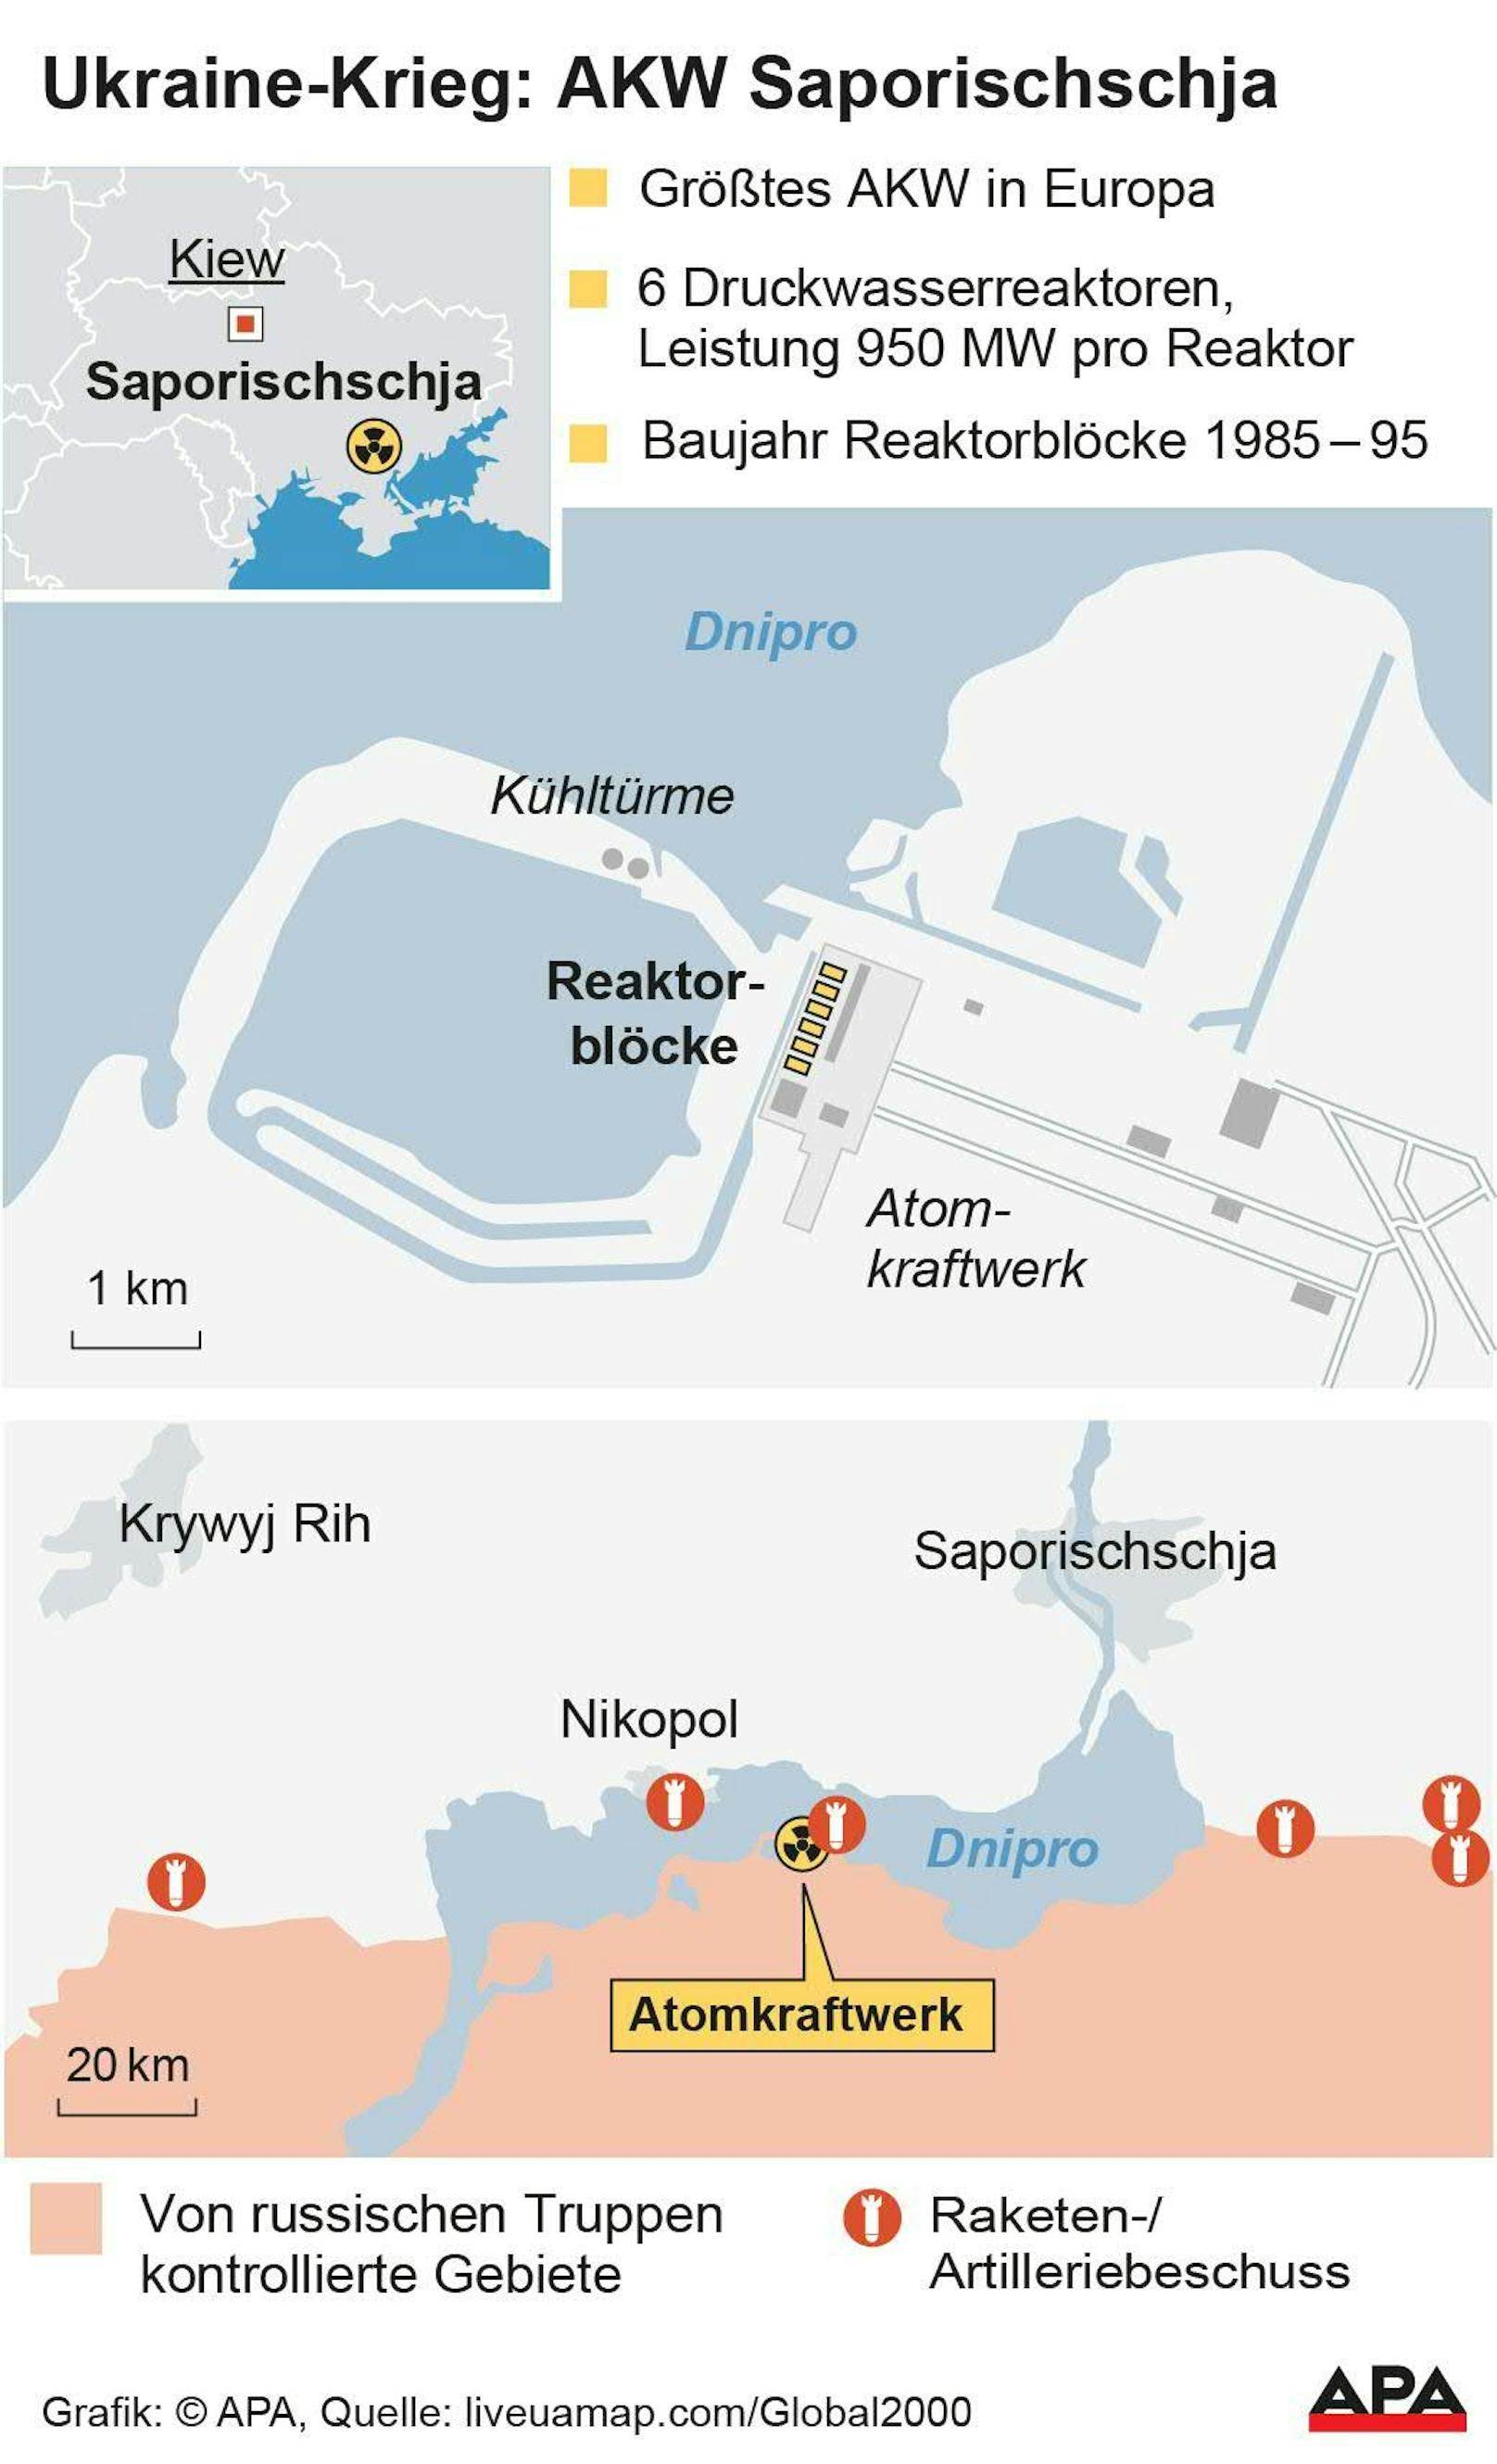 Detailplan AKW, von russischen Truppen kontrollierte Gebiete, Artillerie- und Raketenbeschuss